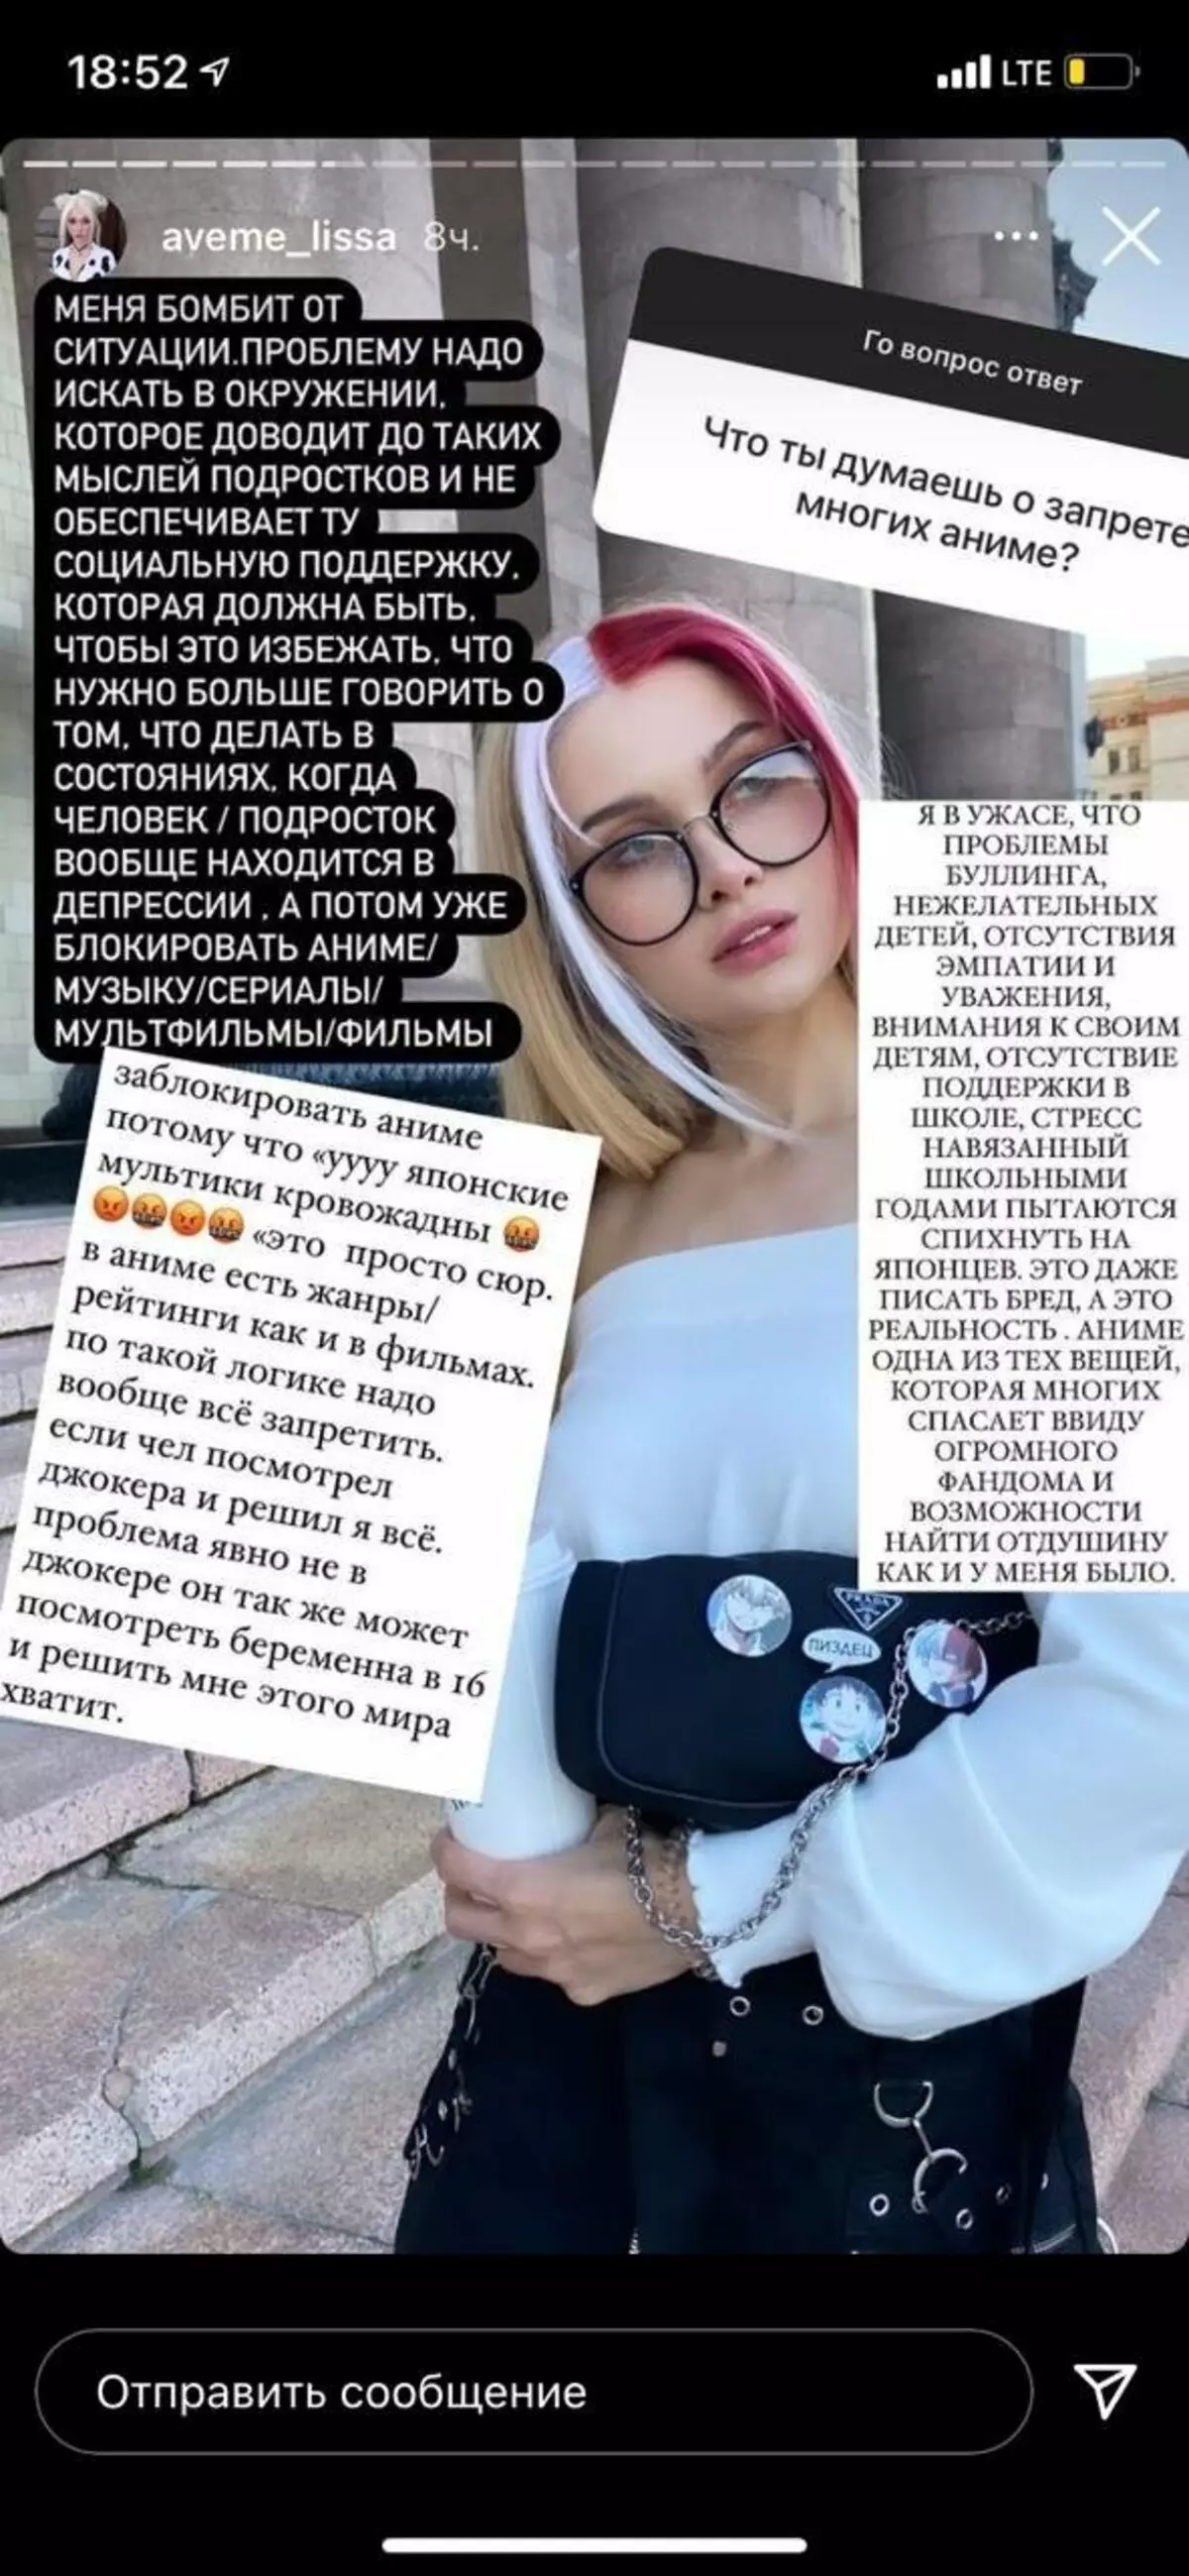 Popularny bloger Lisa Avemi ostro mówił o zakazie anime w Rosji 540_1